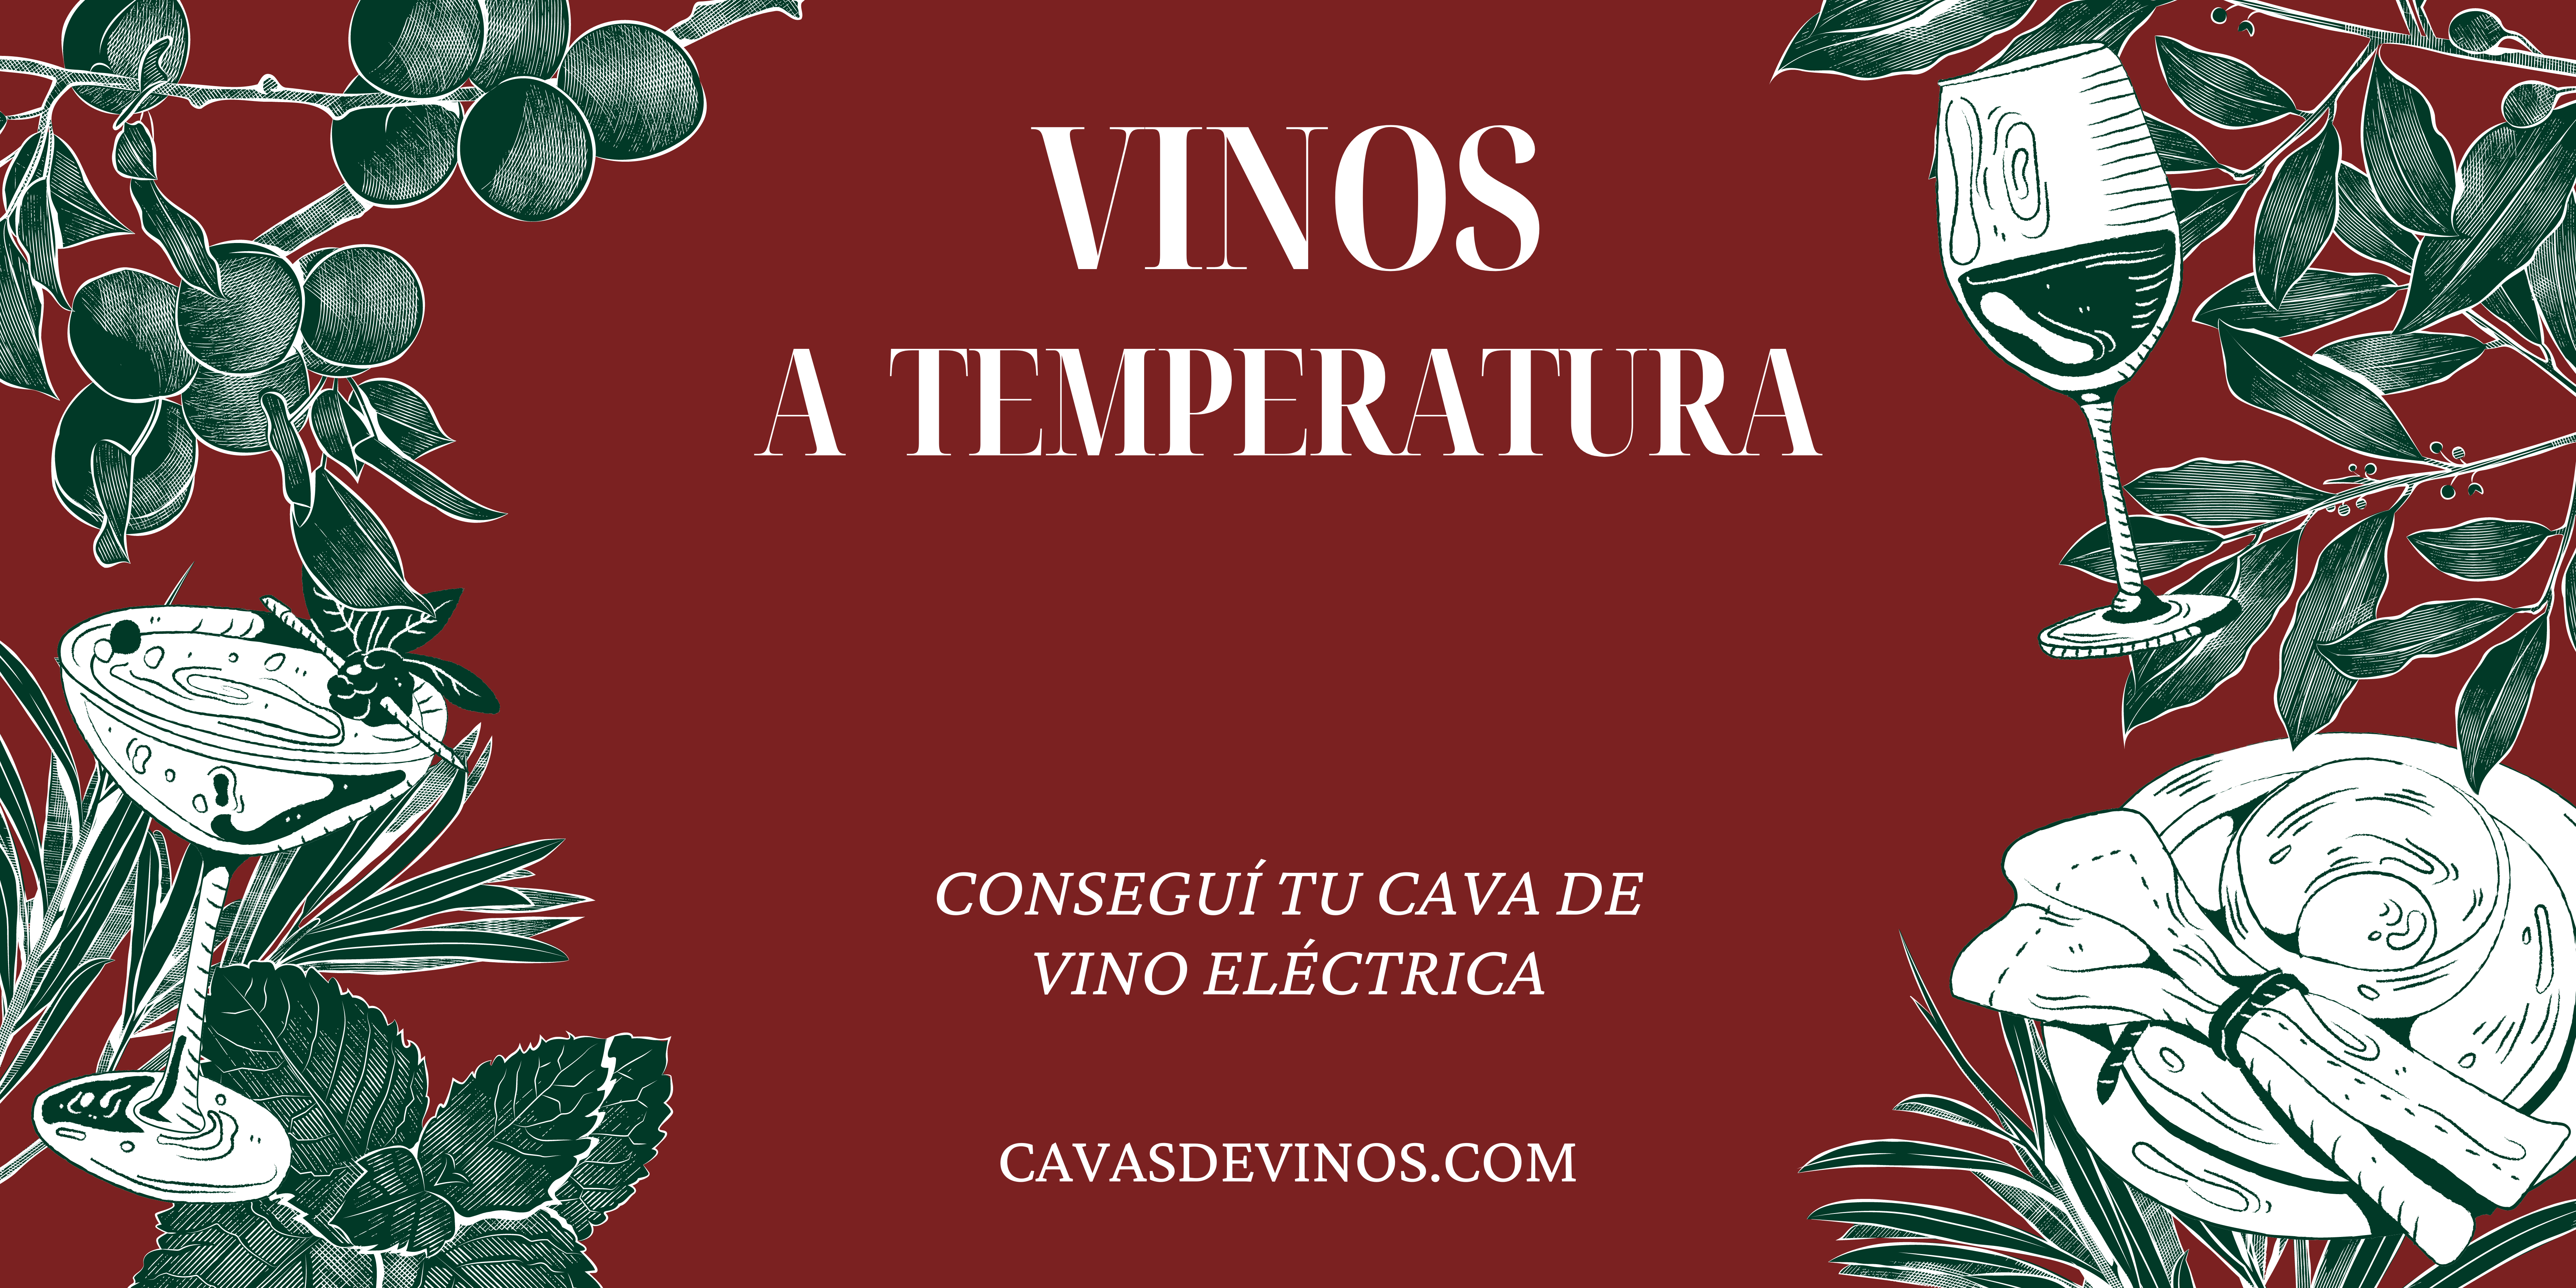 Temperatura de vinos en cavas eléctricas